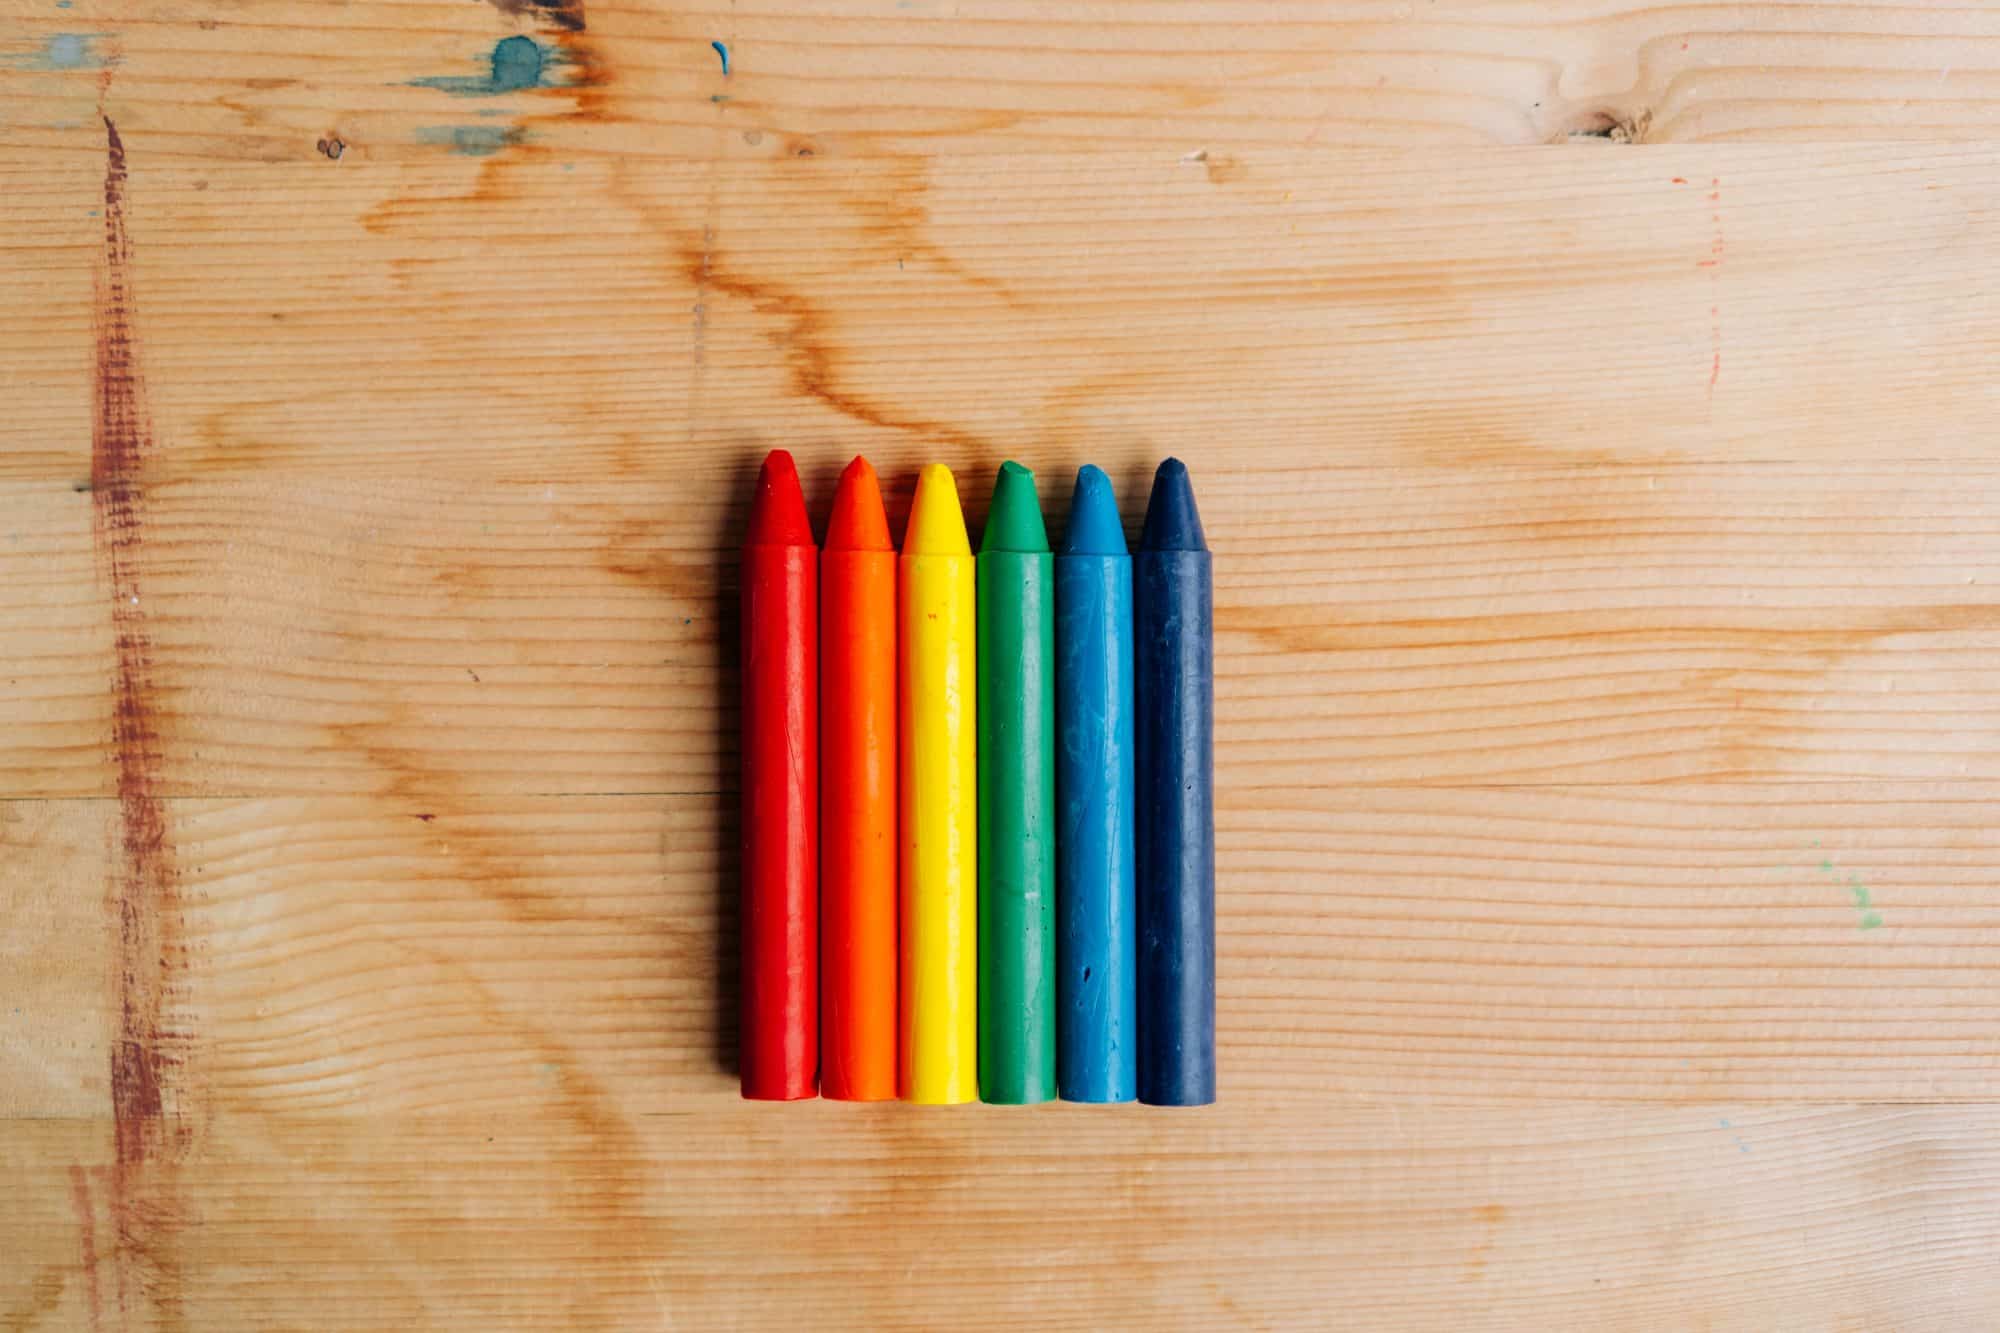 Fargestifter i LGBT farger - symboliserer spekter av seksuelle identiteter